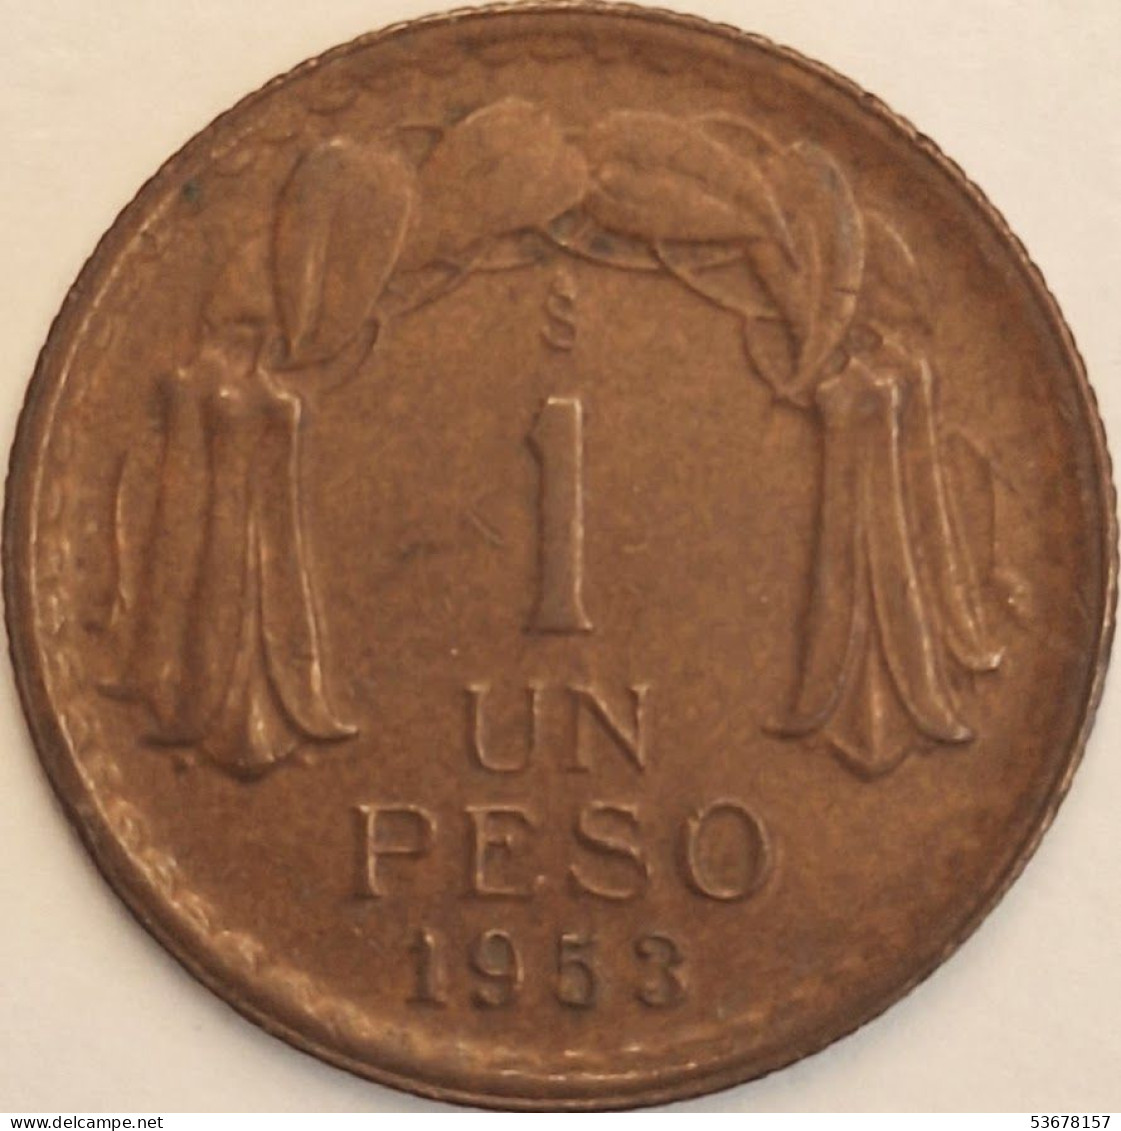 Chile - Peso 1953, KM# 179 (#3423) - Cile